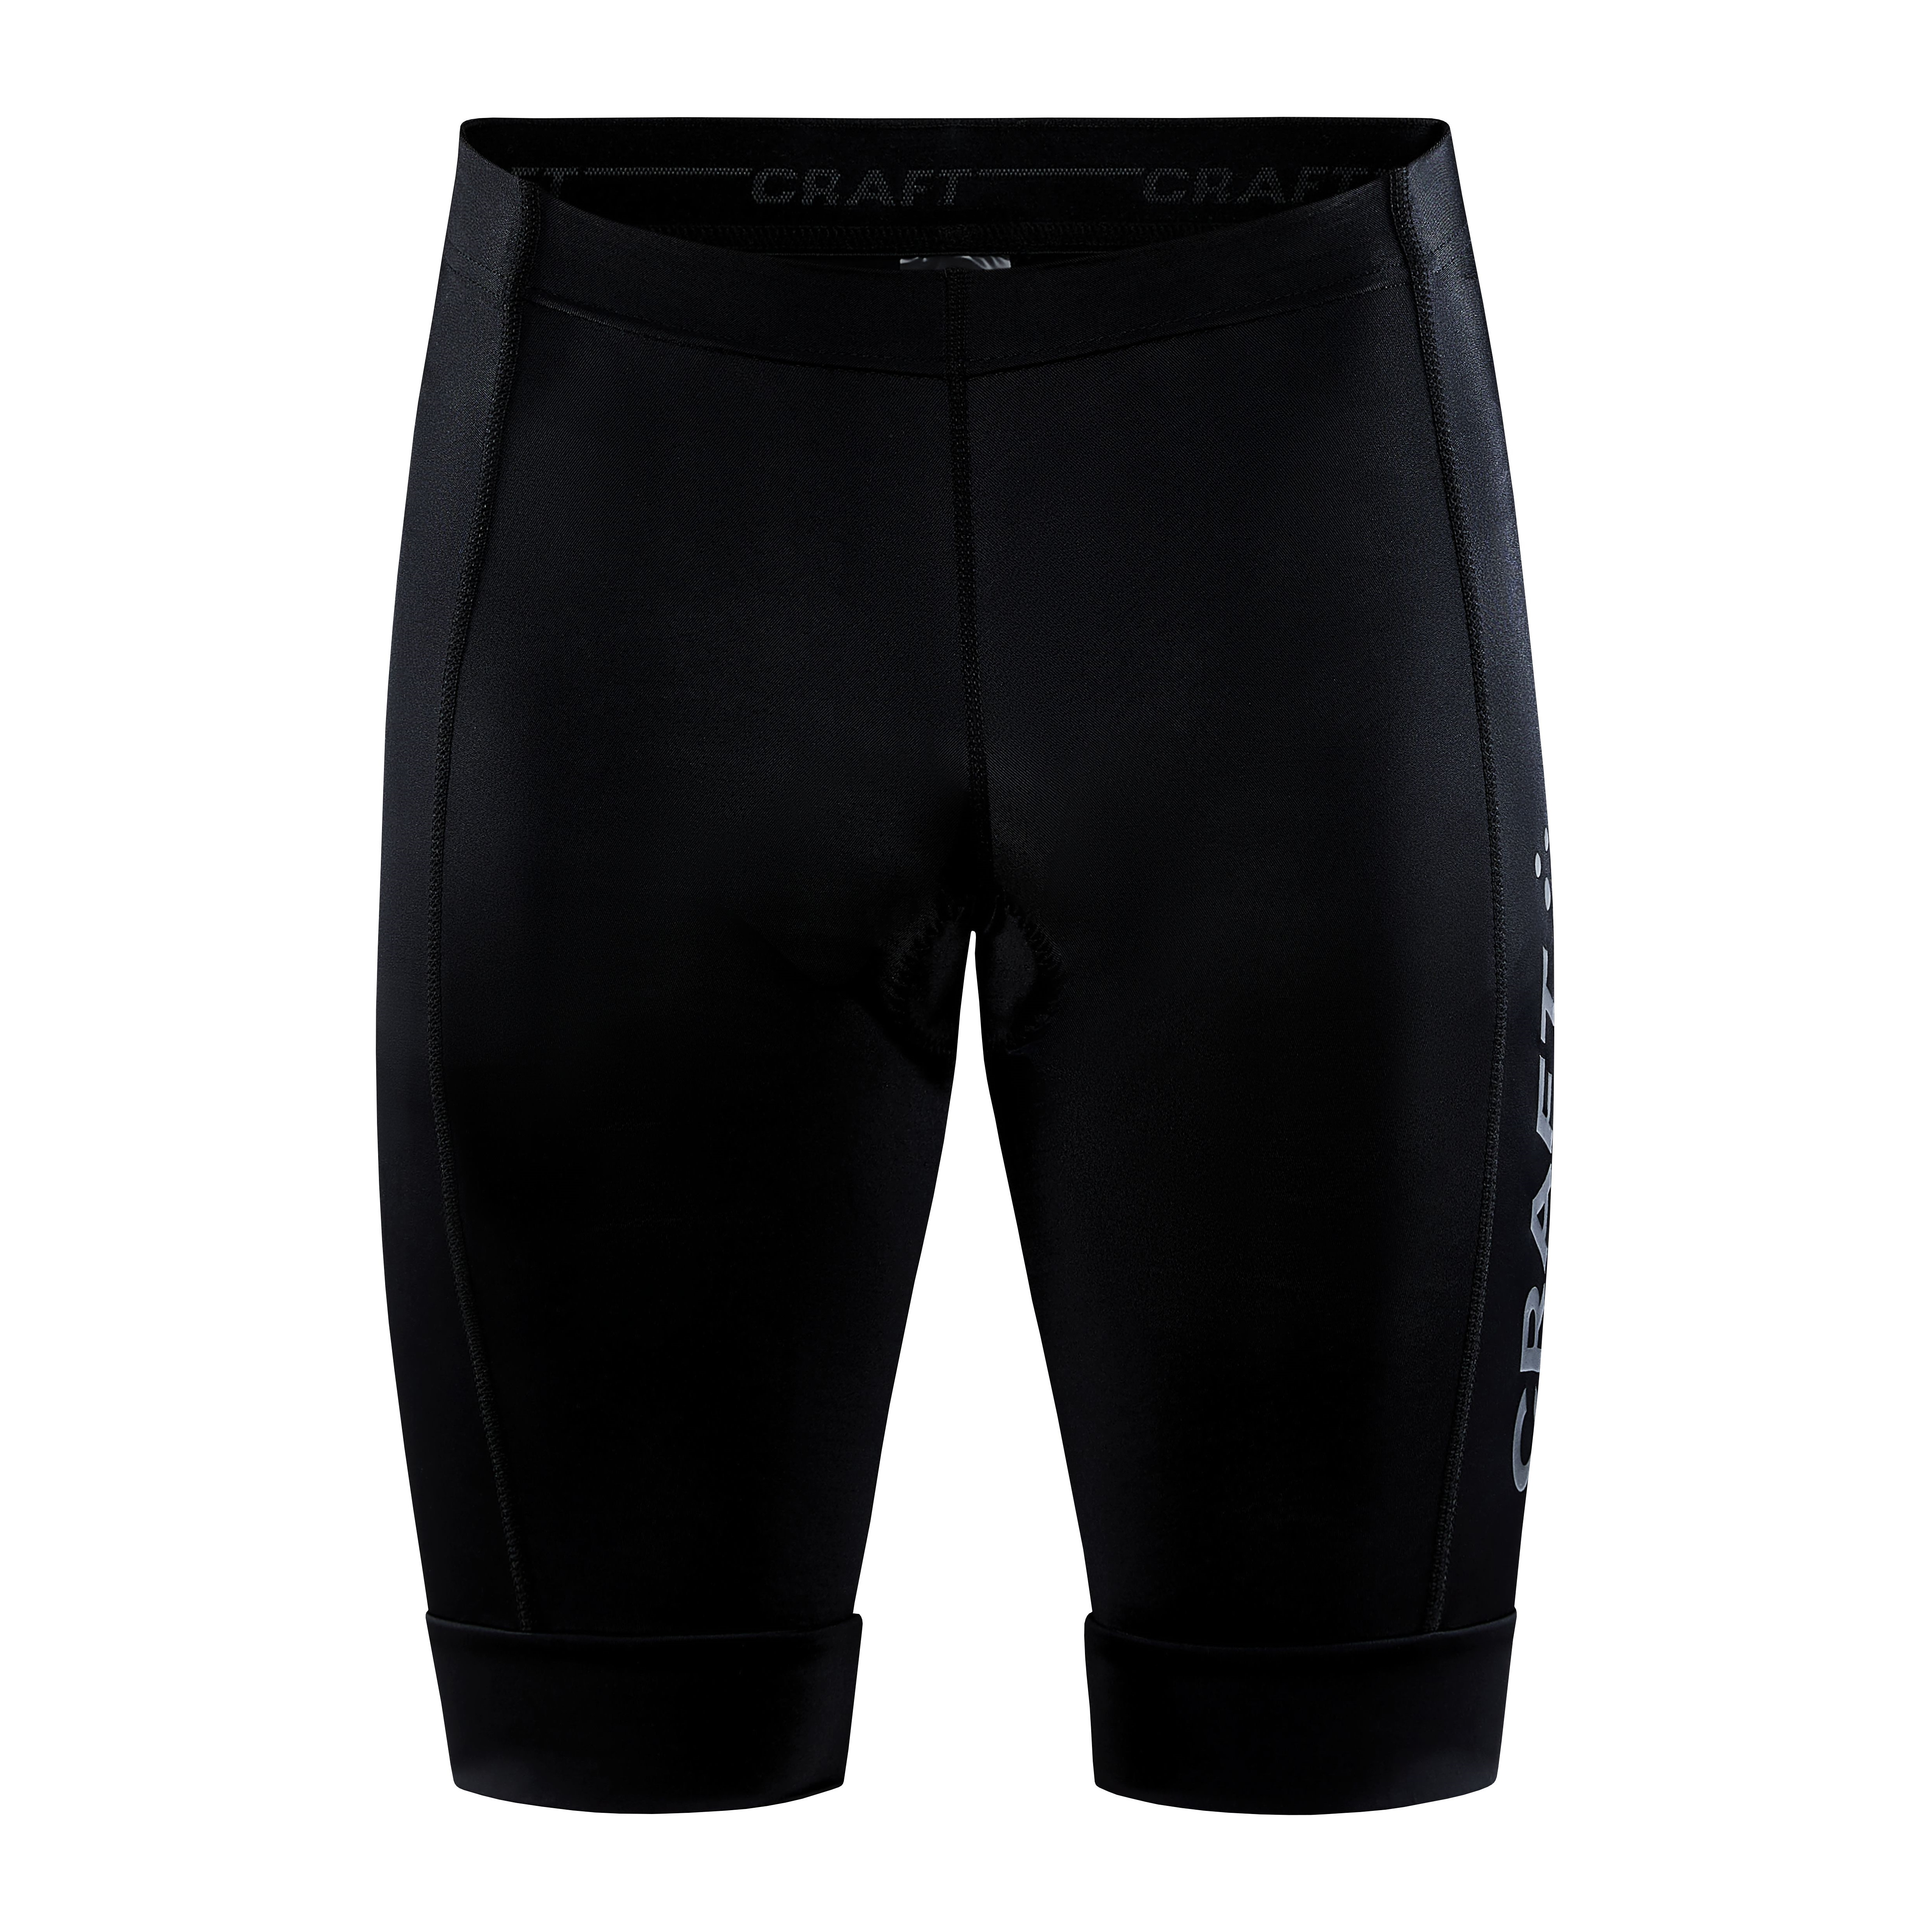 Men's Core Endur Shorts Black